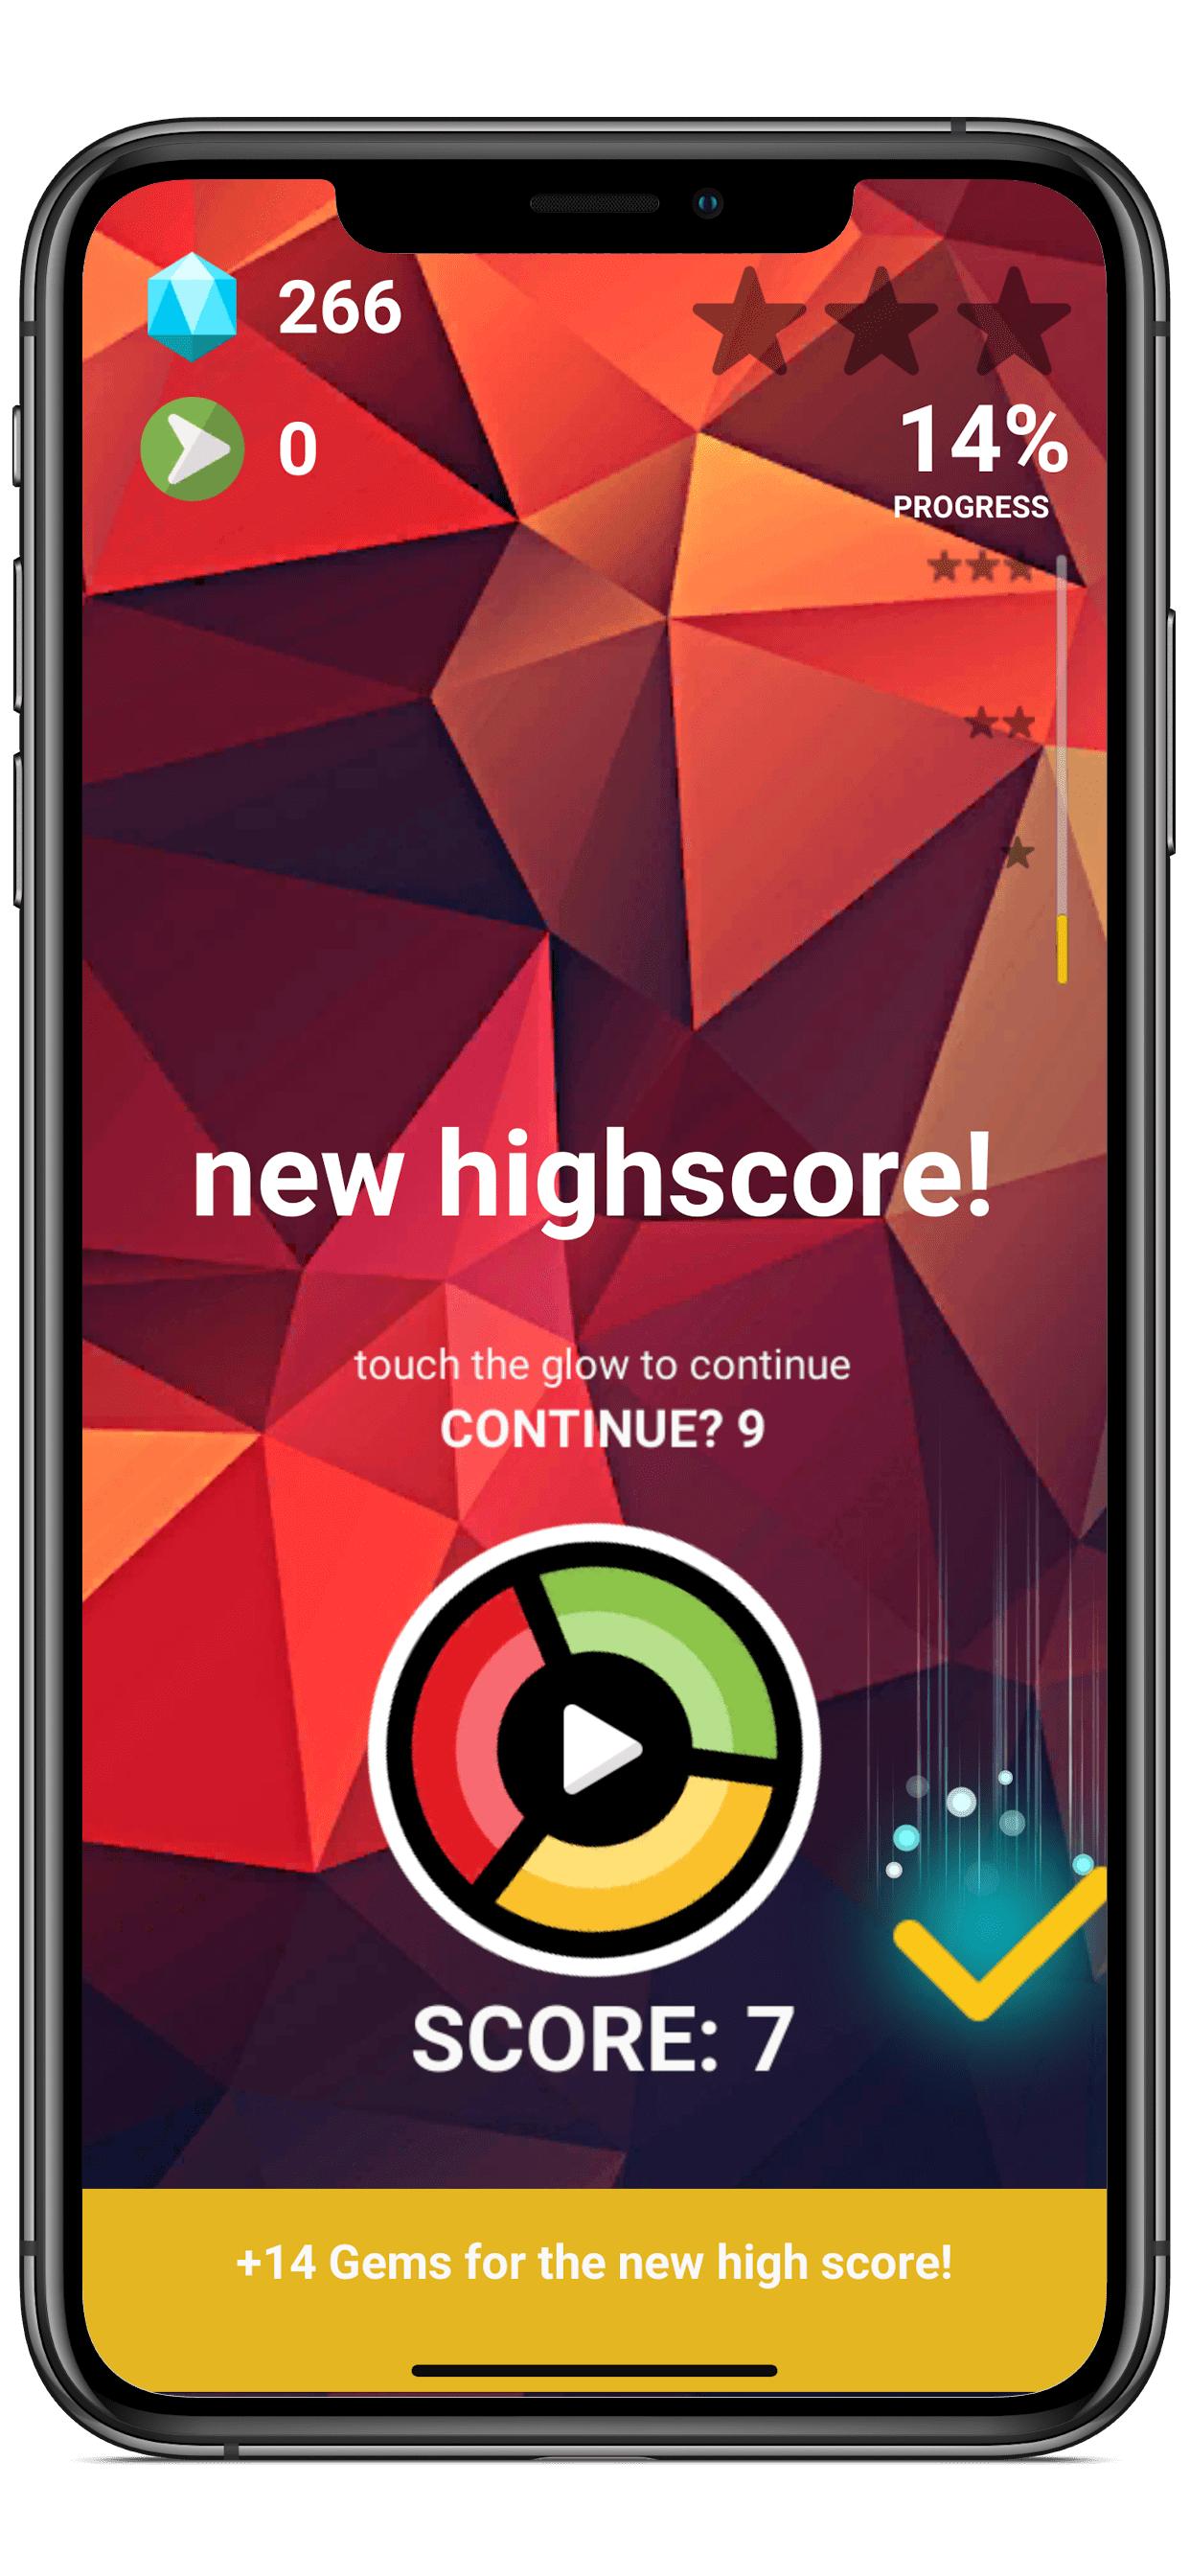 2 11 Darmowa gra SWIRLY dla Android, iOS, Windows i na urządzenia mobilne - kolory i kształty, brak przemocy